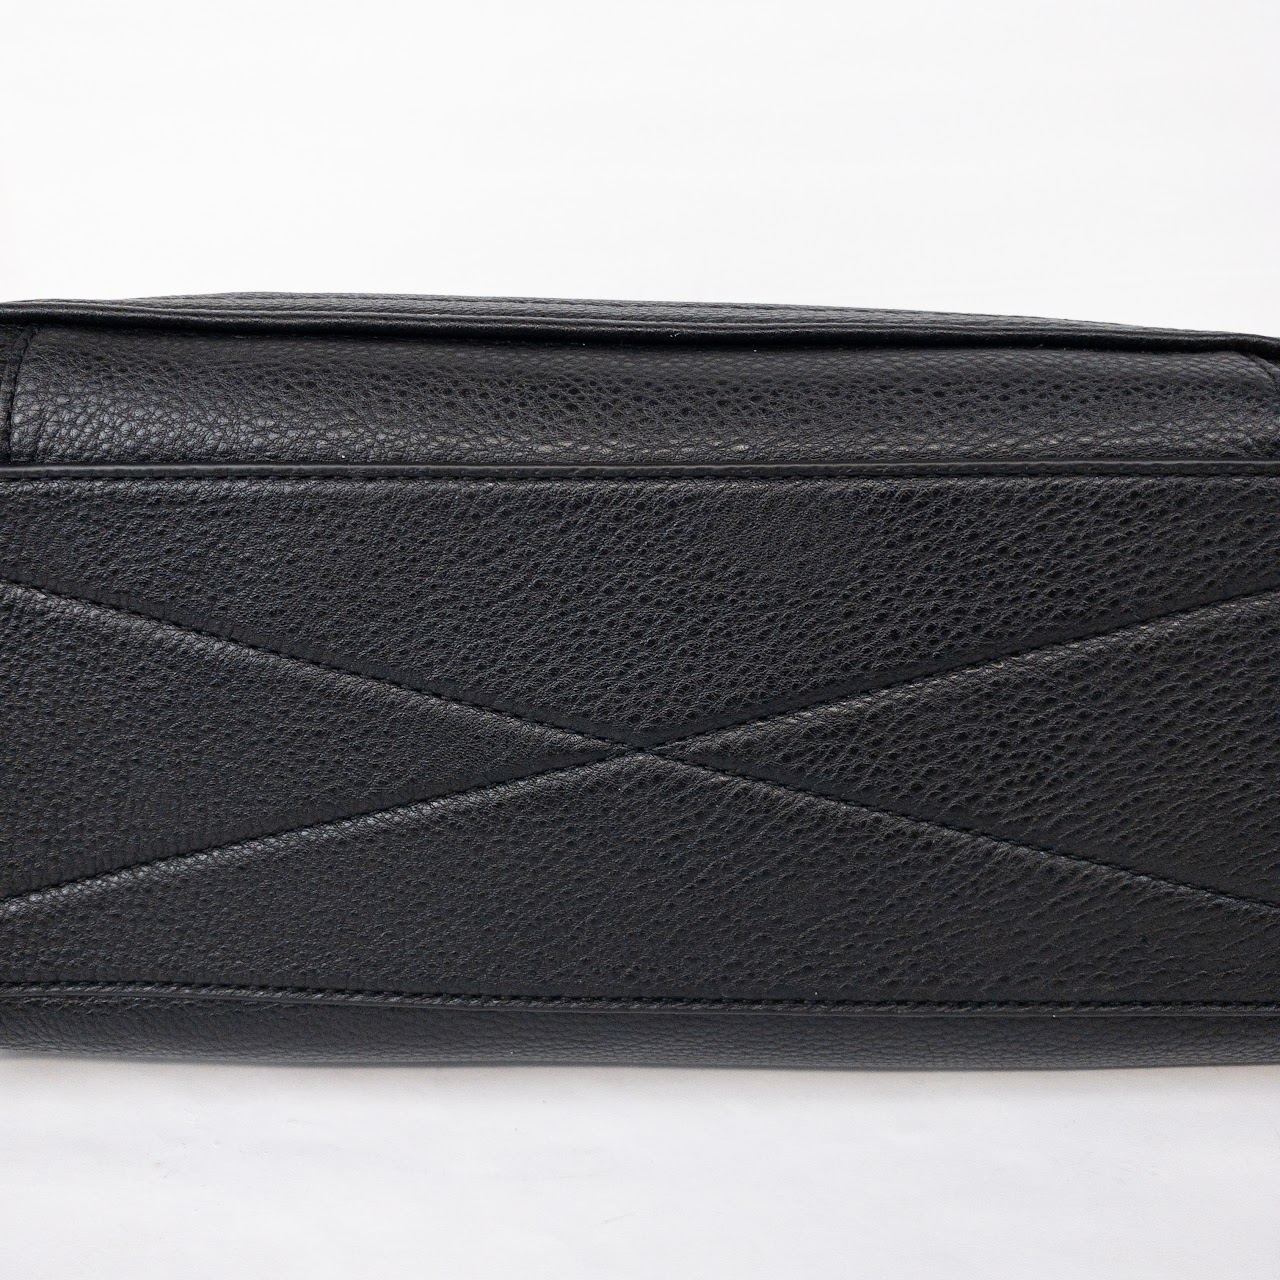 Marc Jacobs Black Leather Shoulder Bag